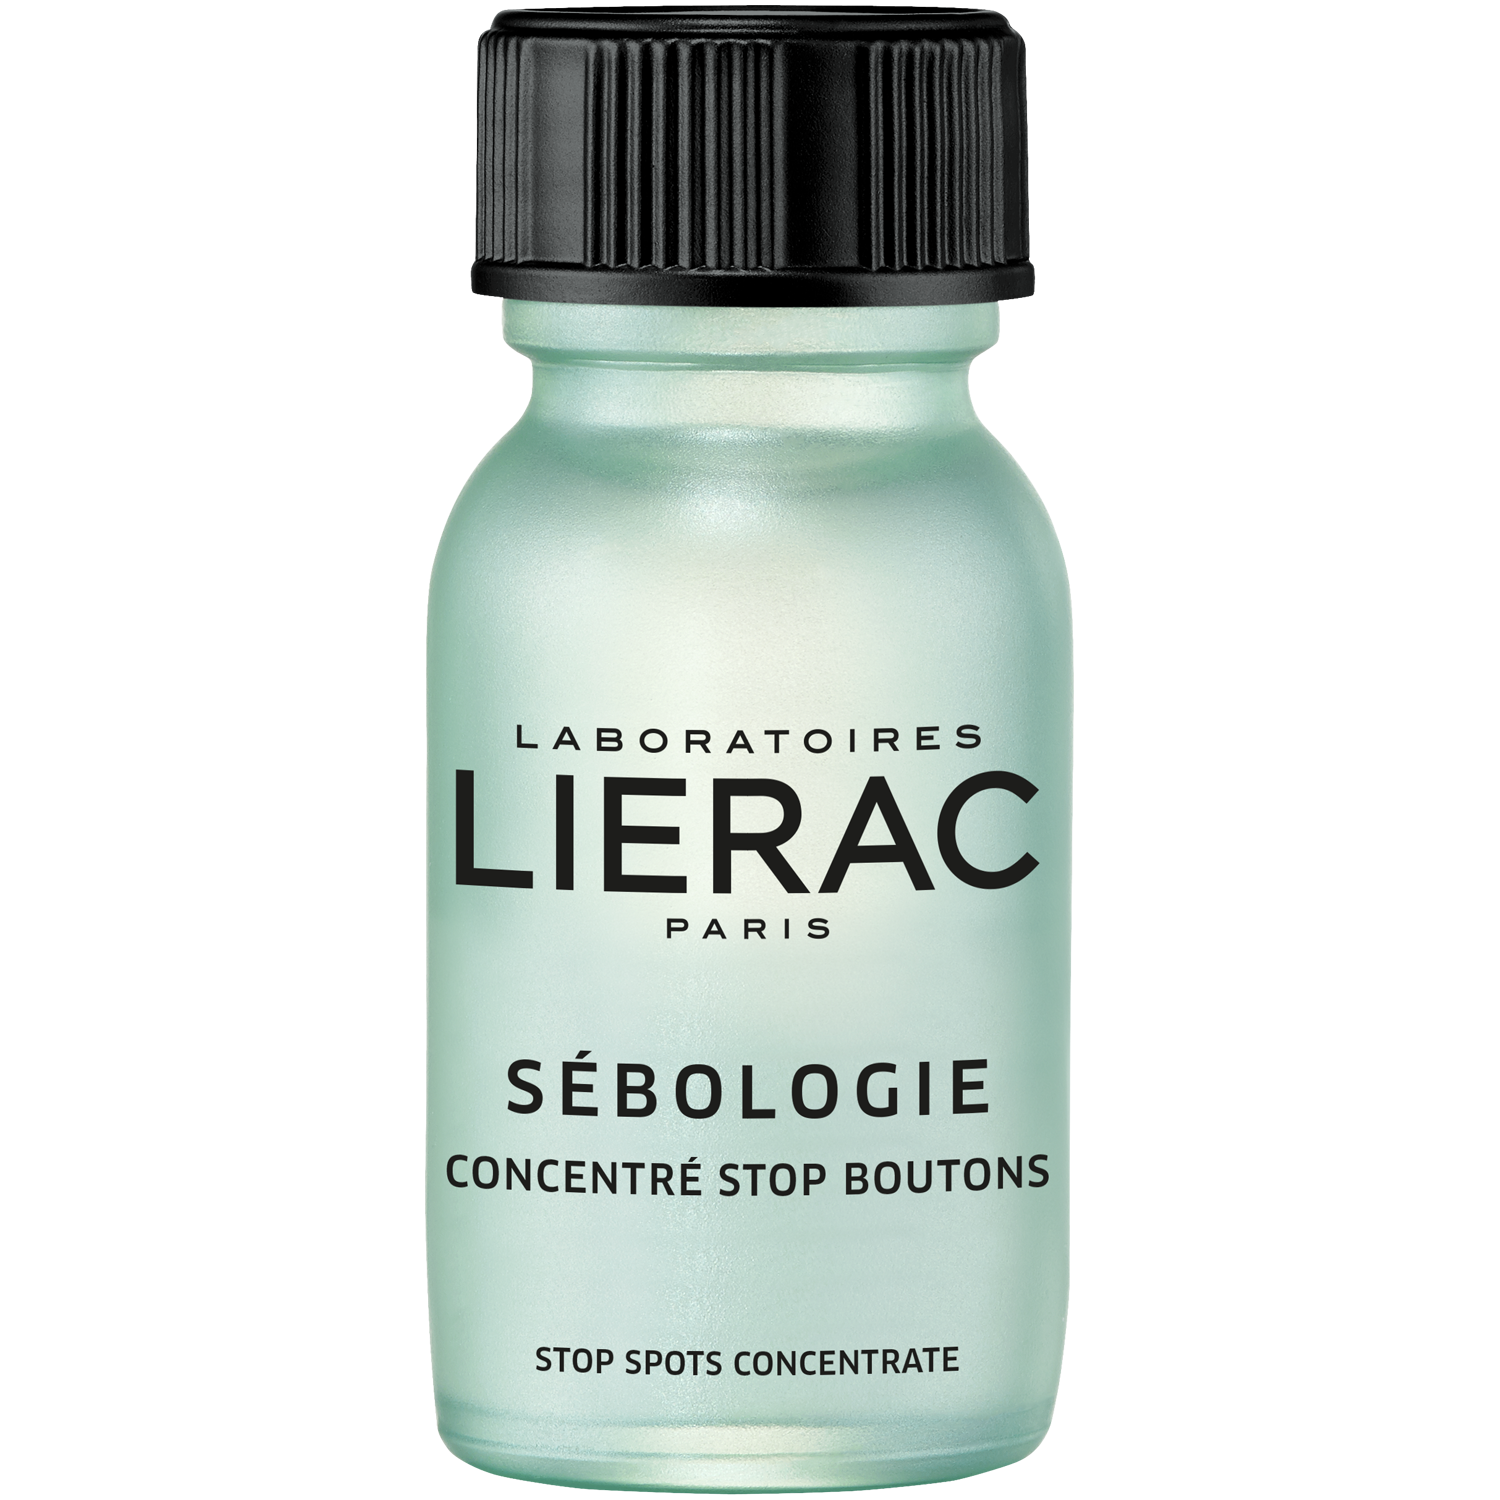 Концентрат 15. Lierac Sebologie. Lierac Себоложи. Лиерак концентрат. Lierac лосьон Sebologie кератолитический для коррекции несовершенств кожи.